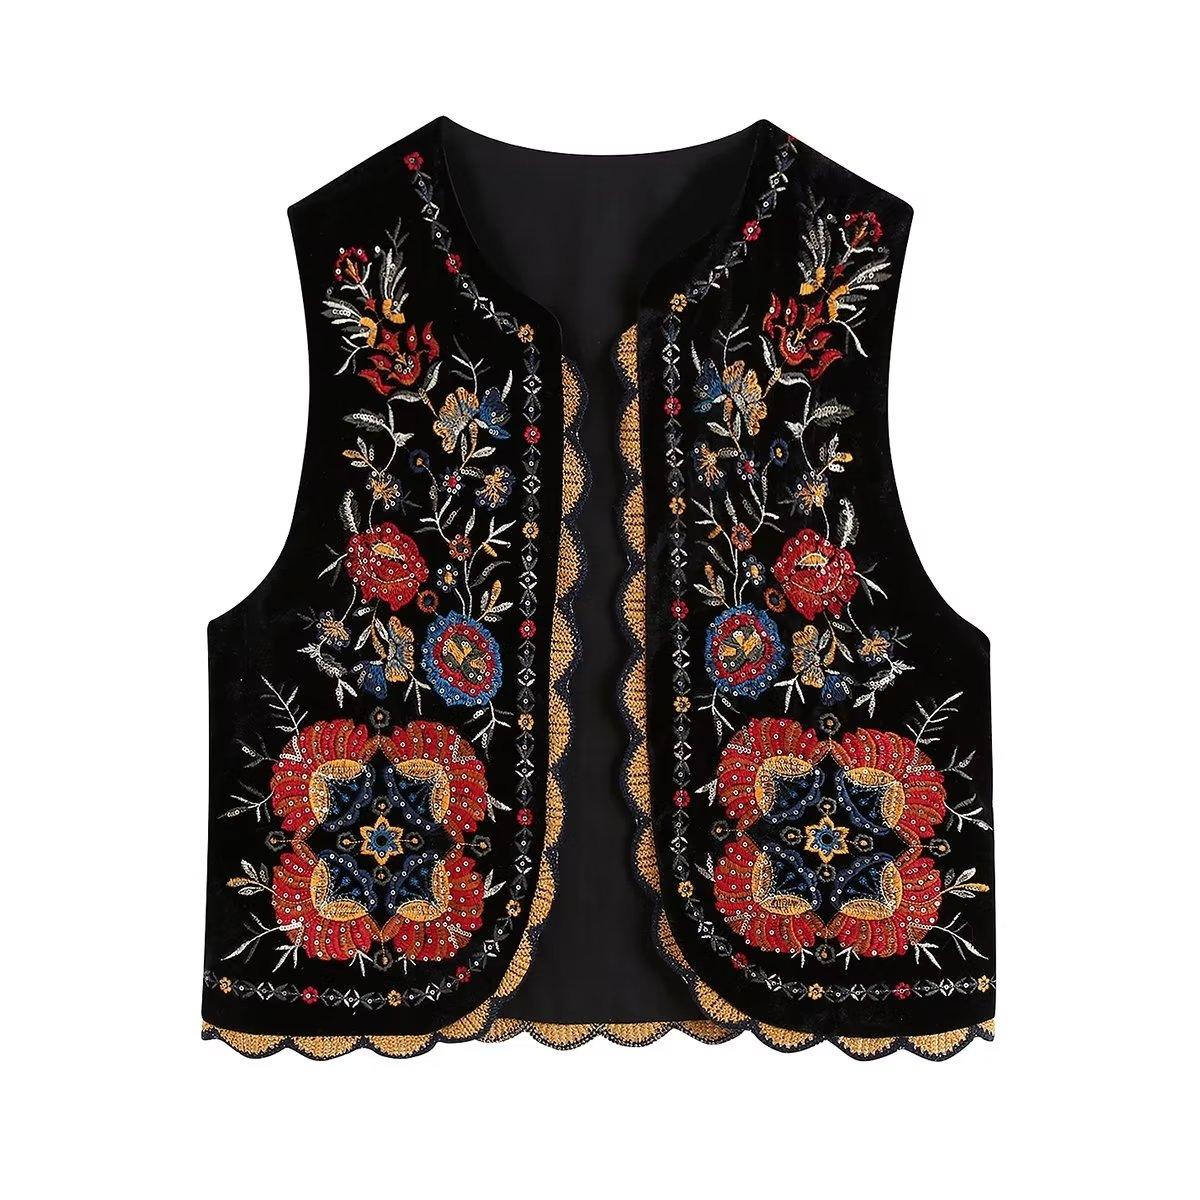 Vintage Boho flower embroidery vest Vests - The Burner Shop